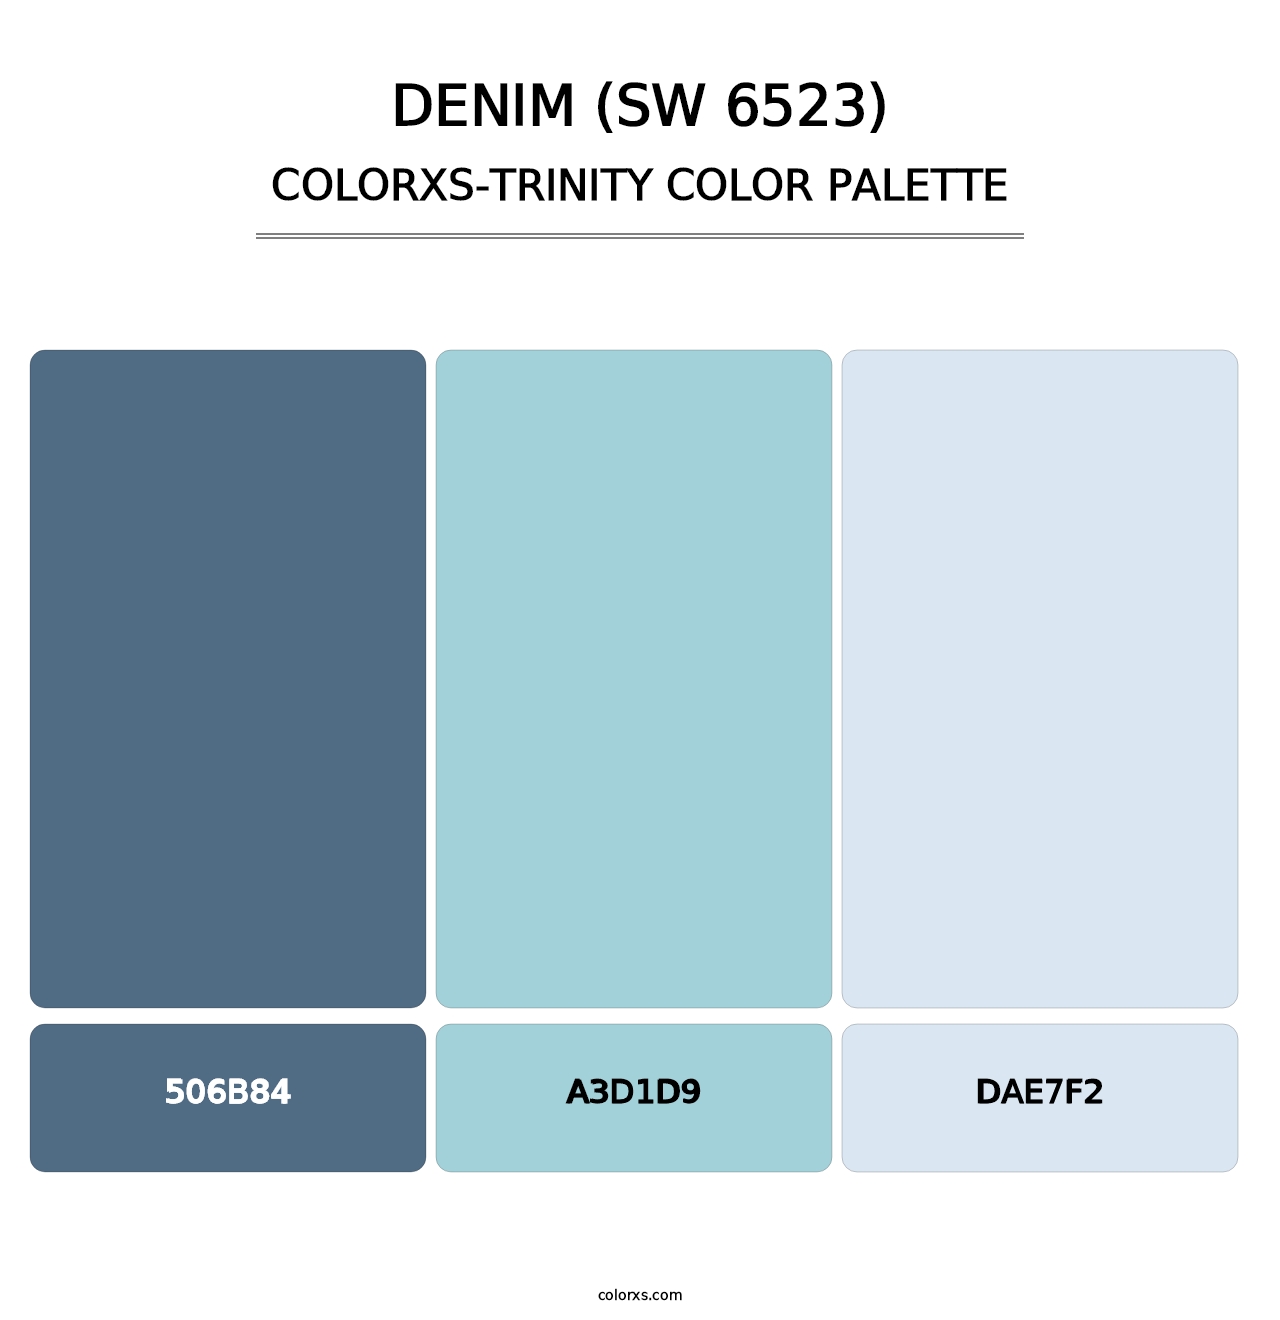 Denim (SW 6523) - Colorxs Trinity Palette